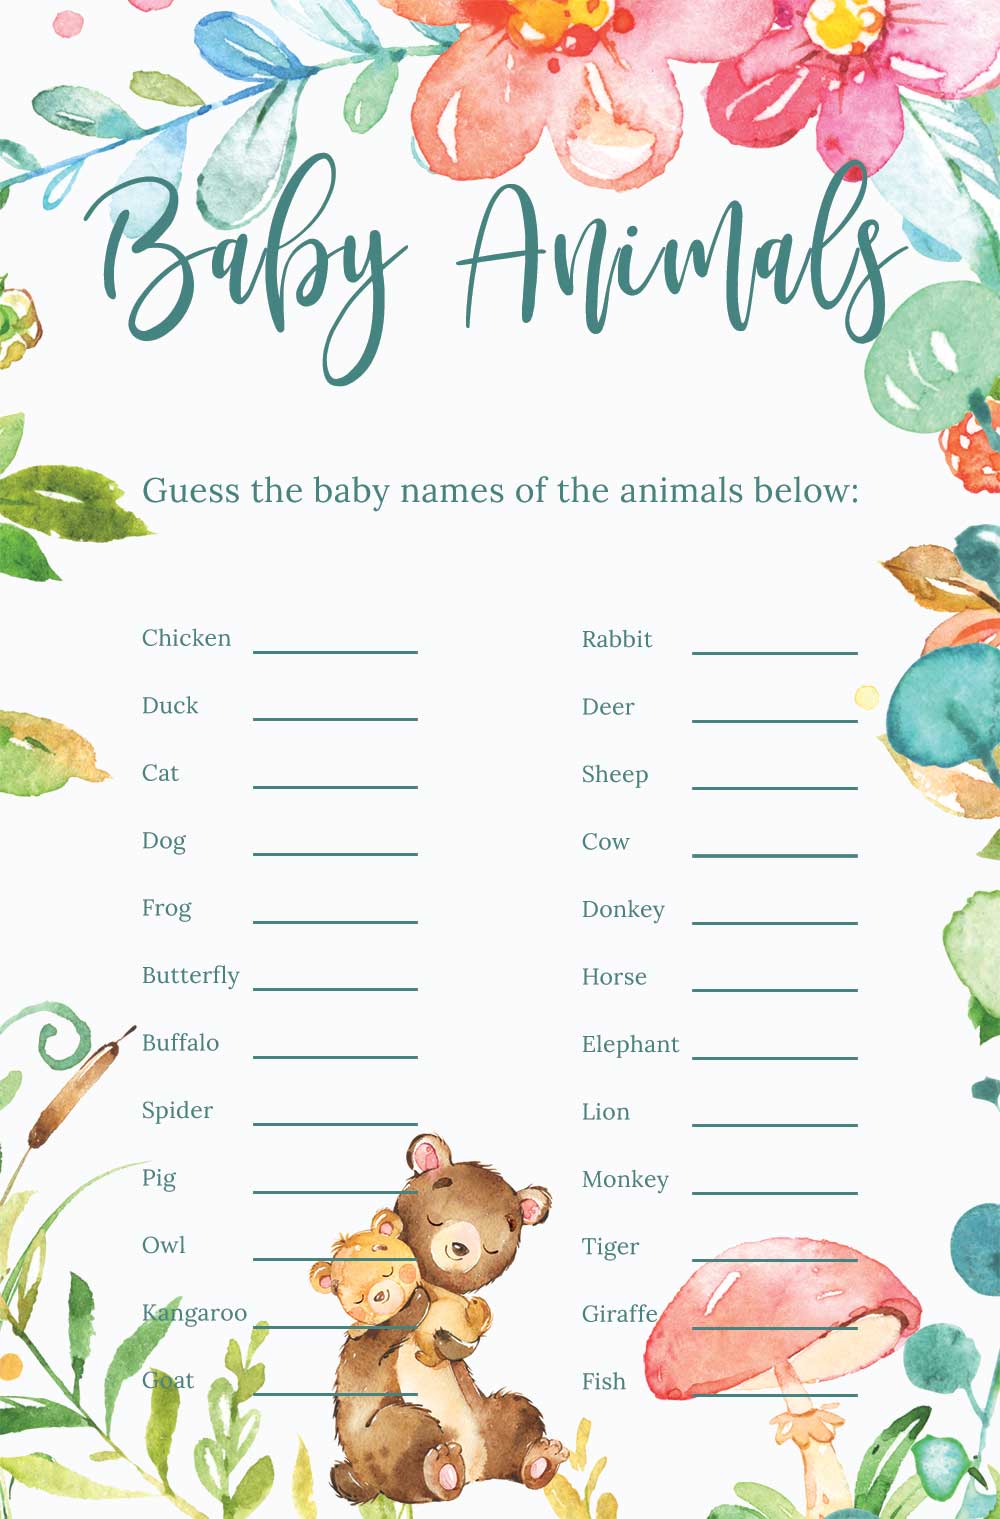 Name that baby animal game - Raspberry theme